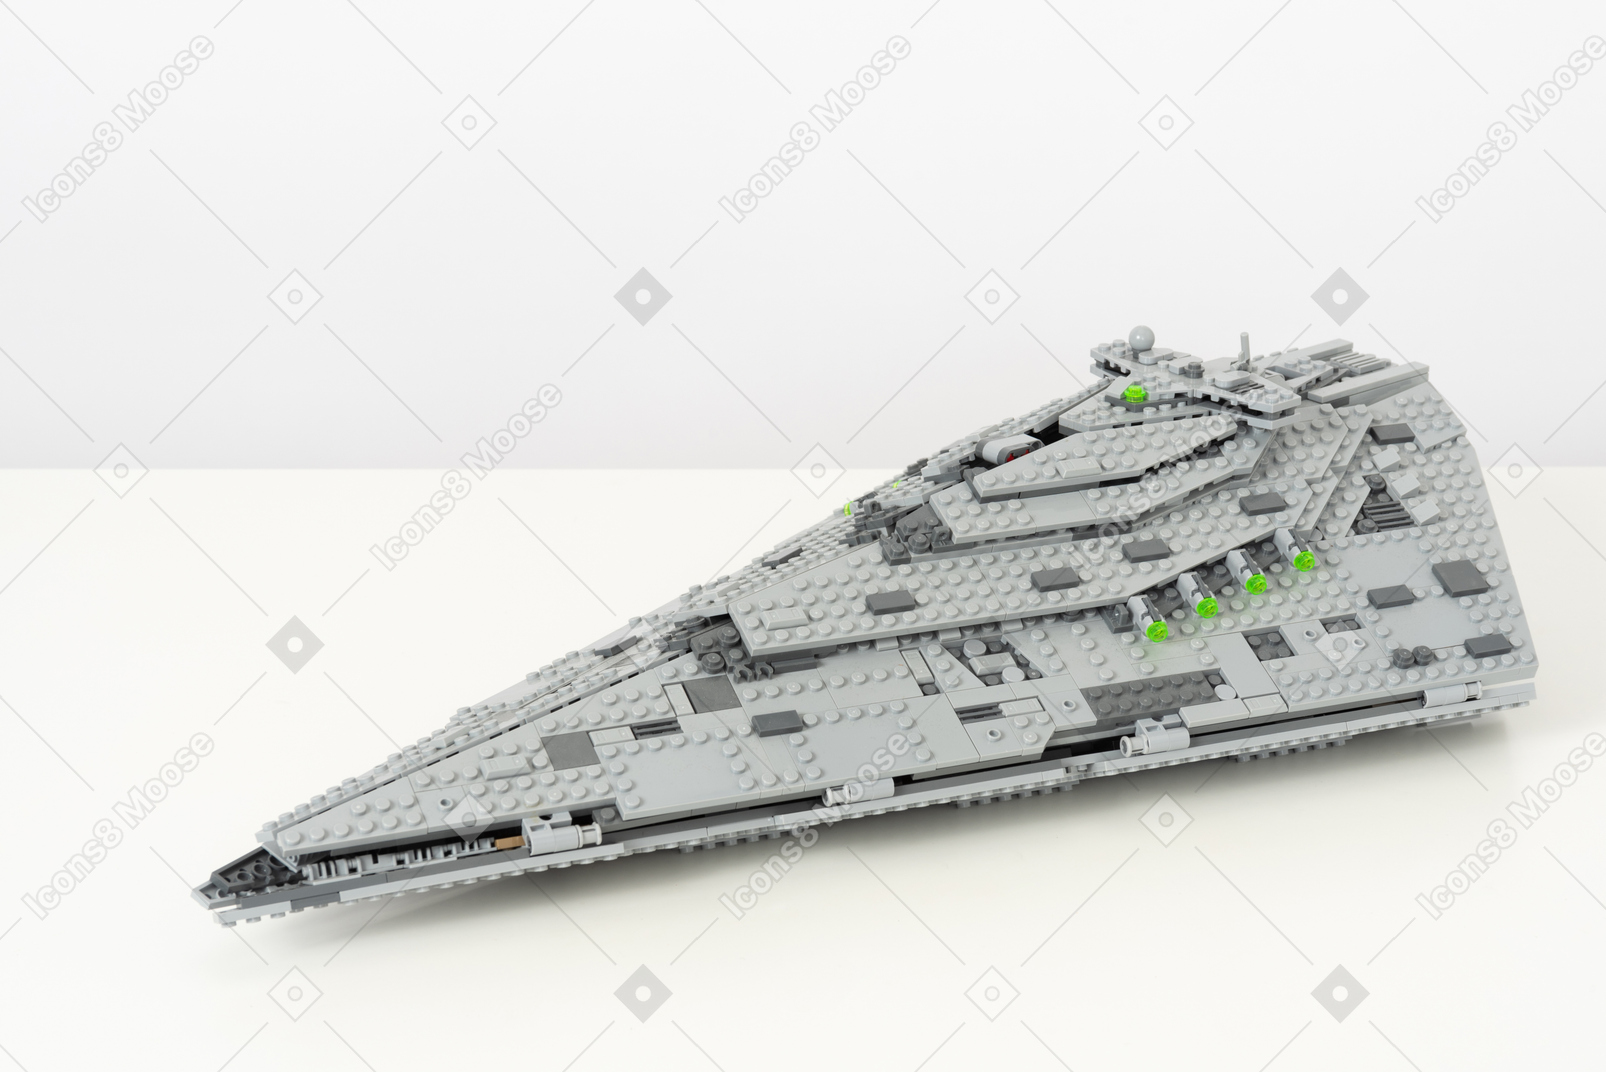 Lego spaceship on a white background